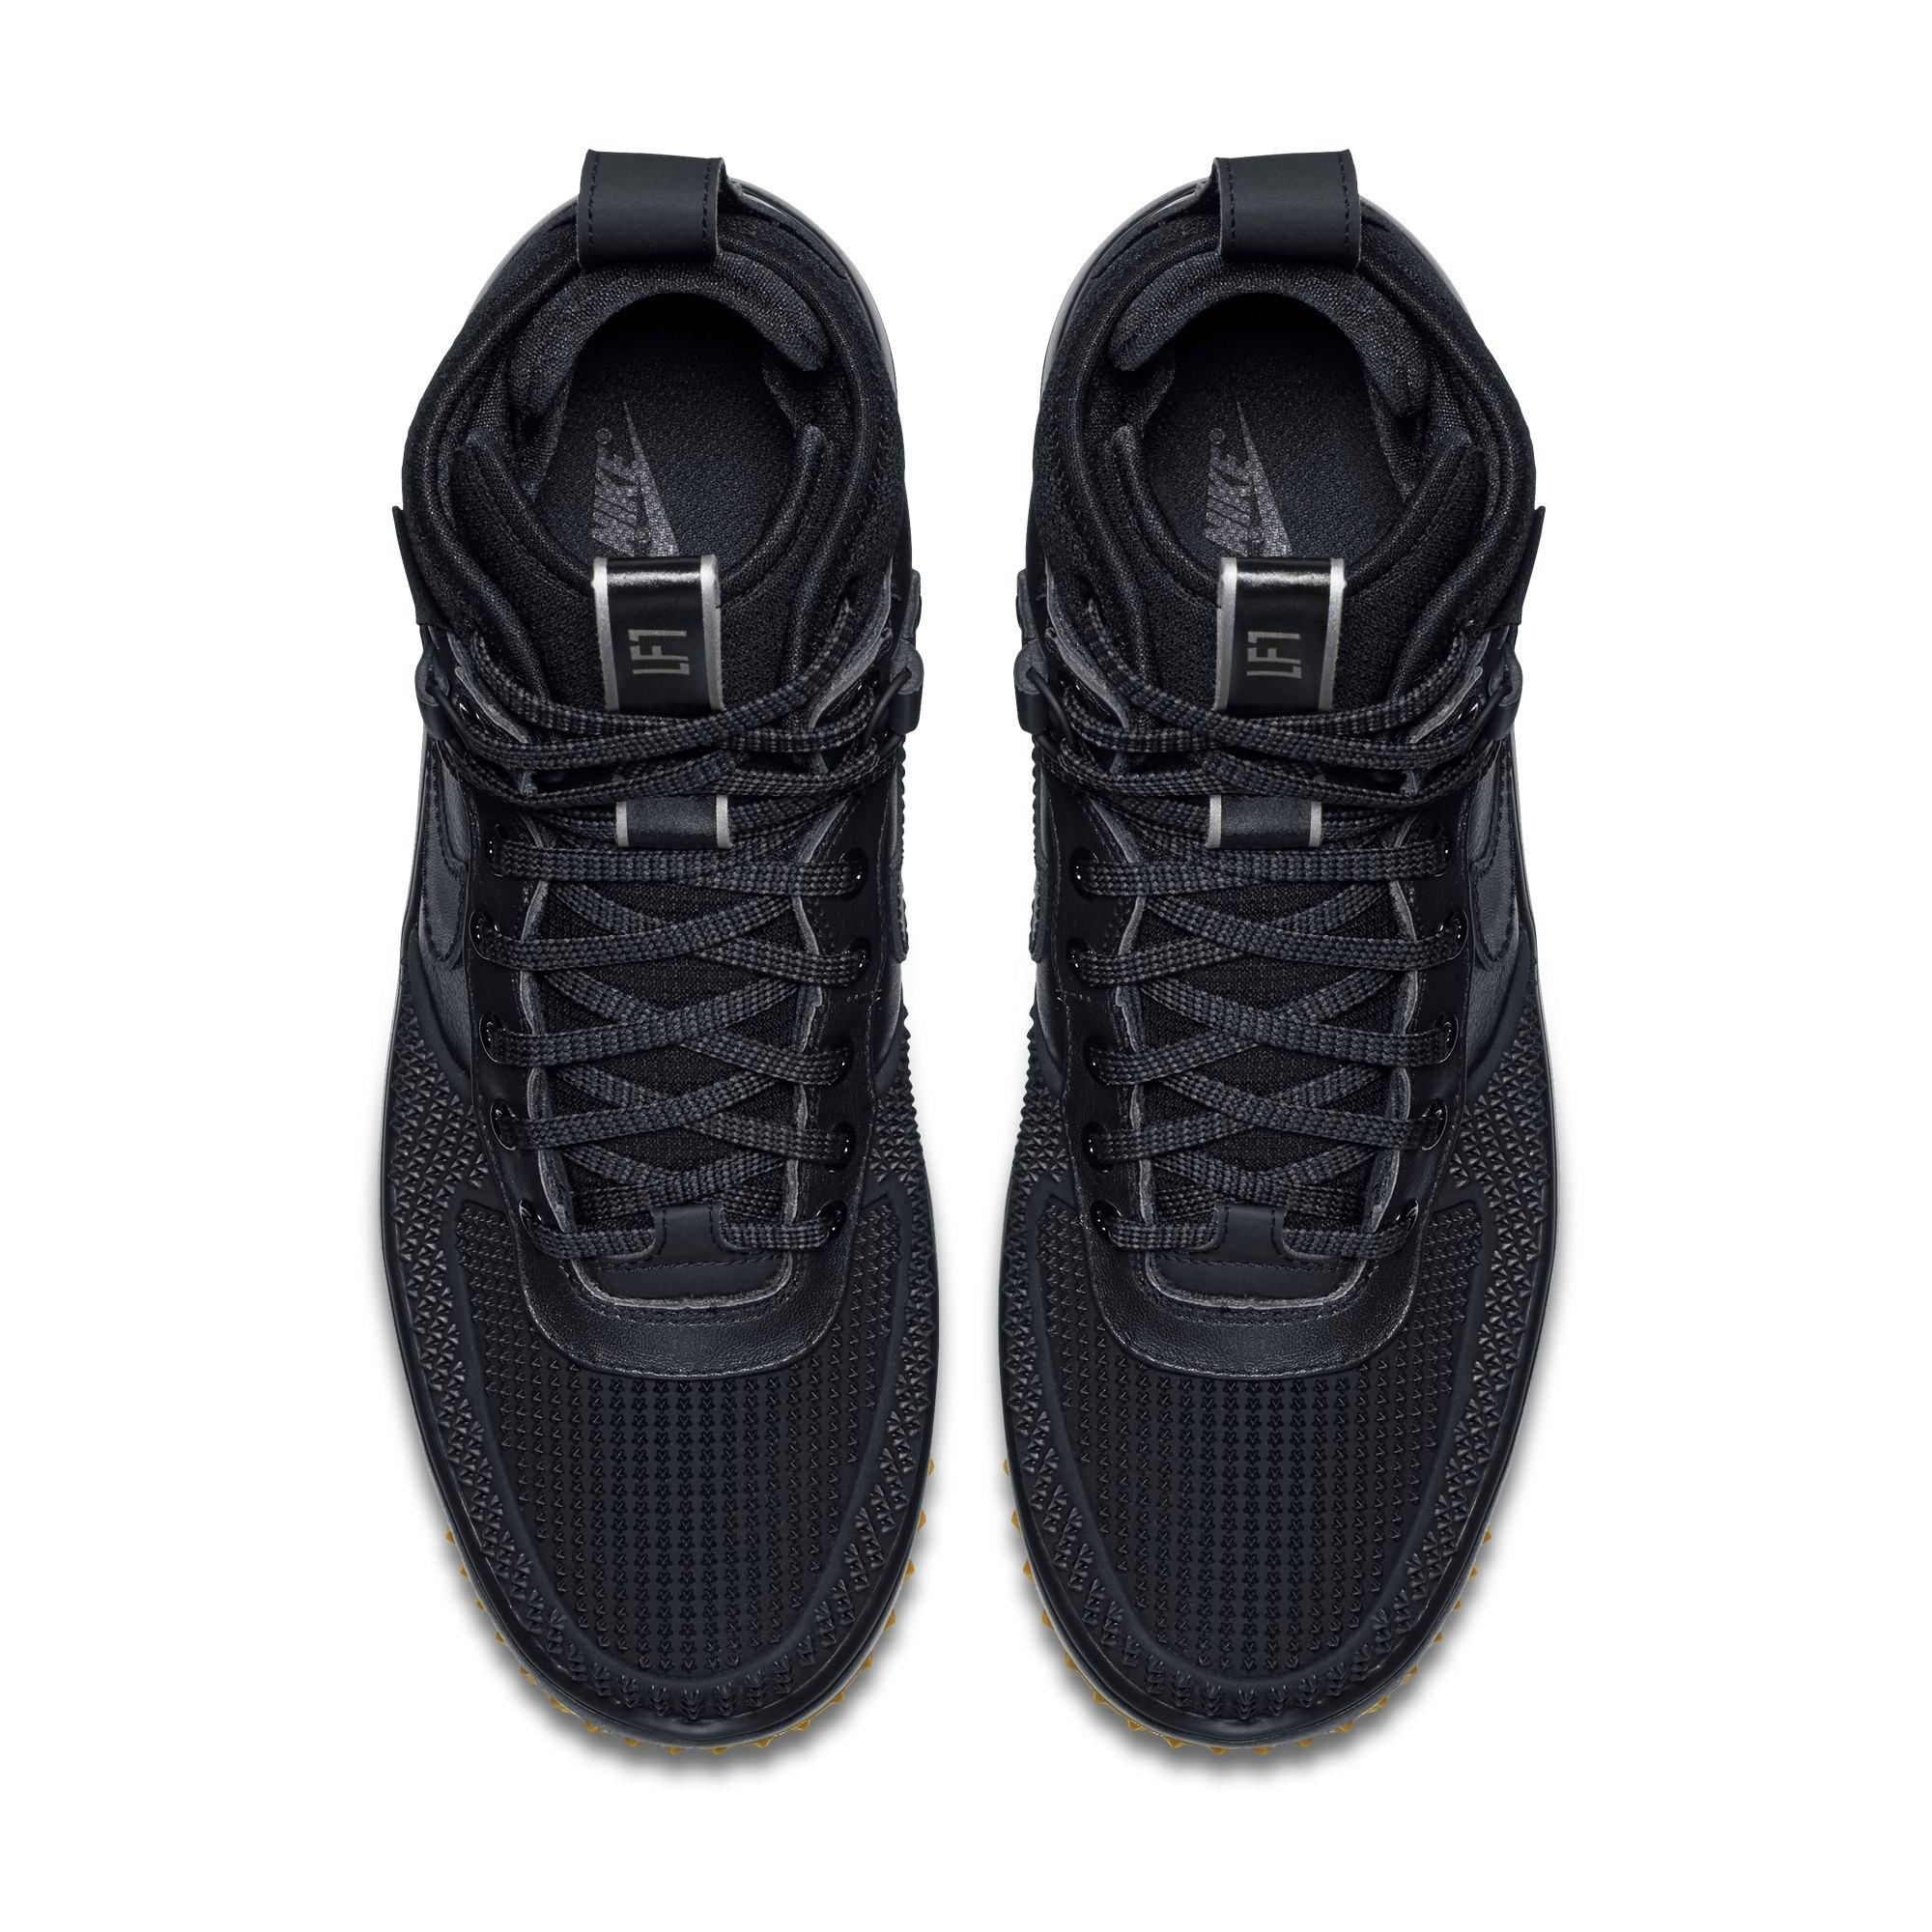 Nike Lunar Force 1 